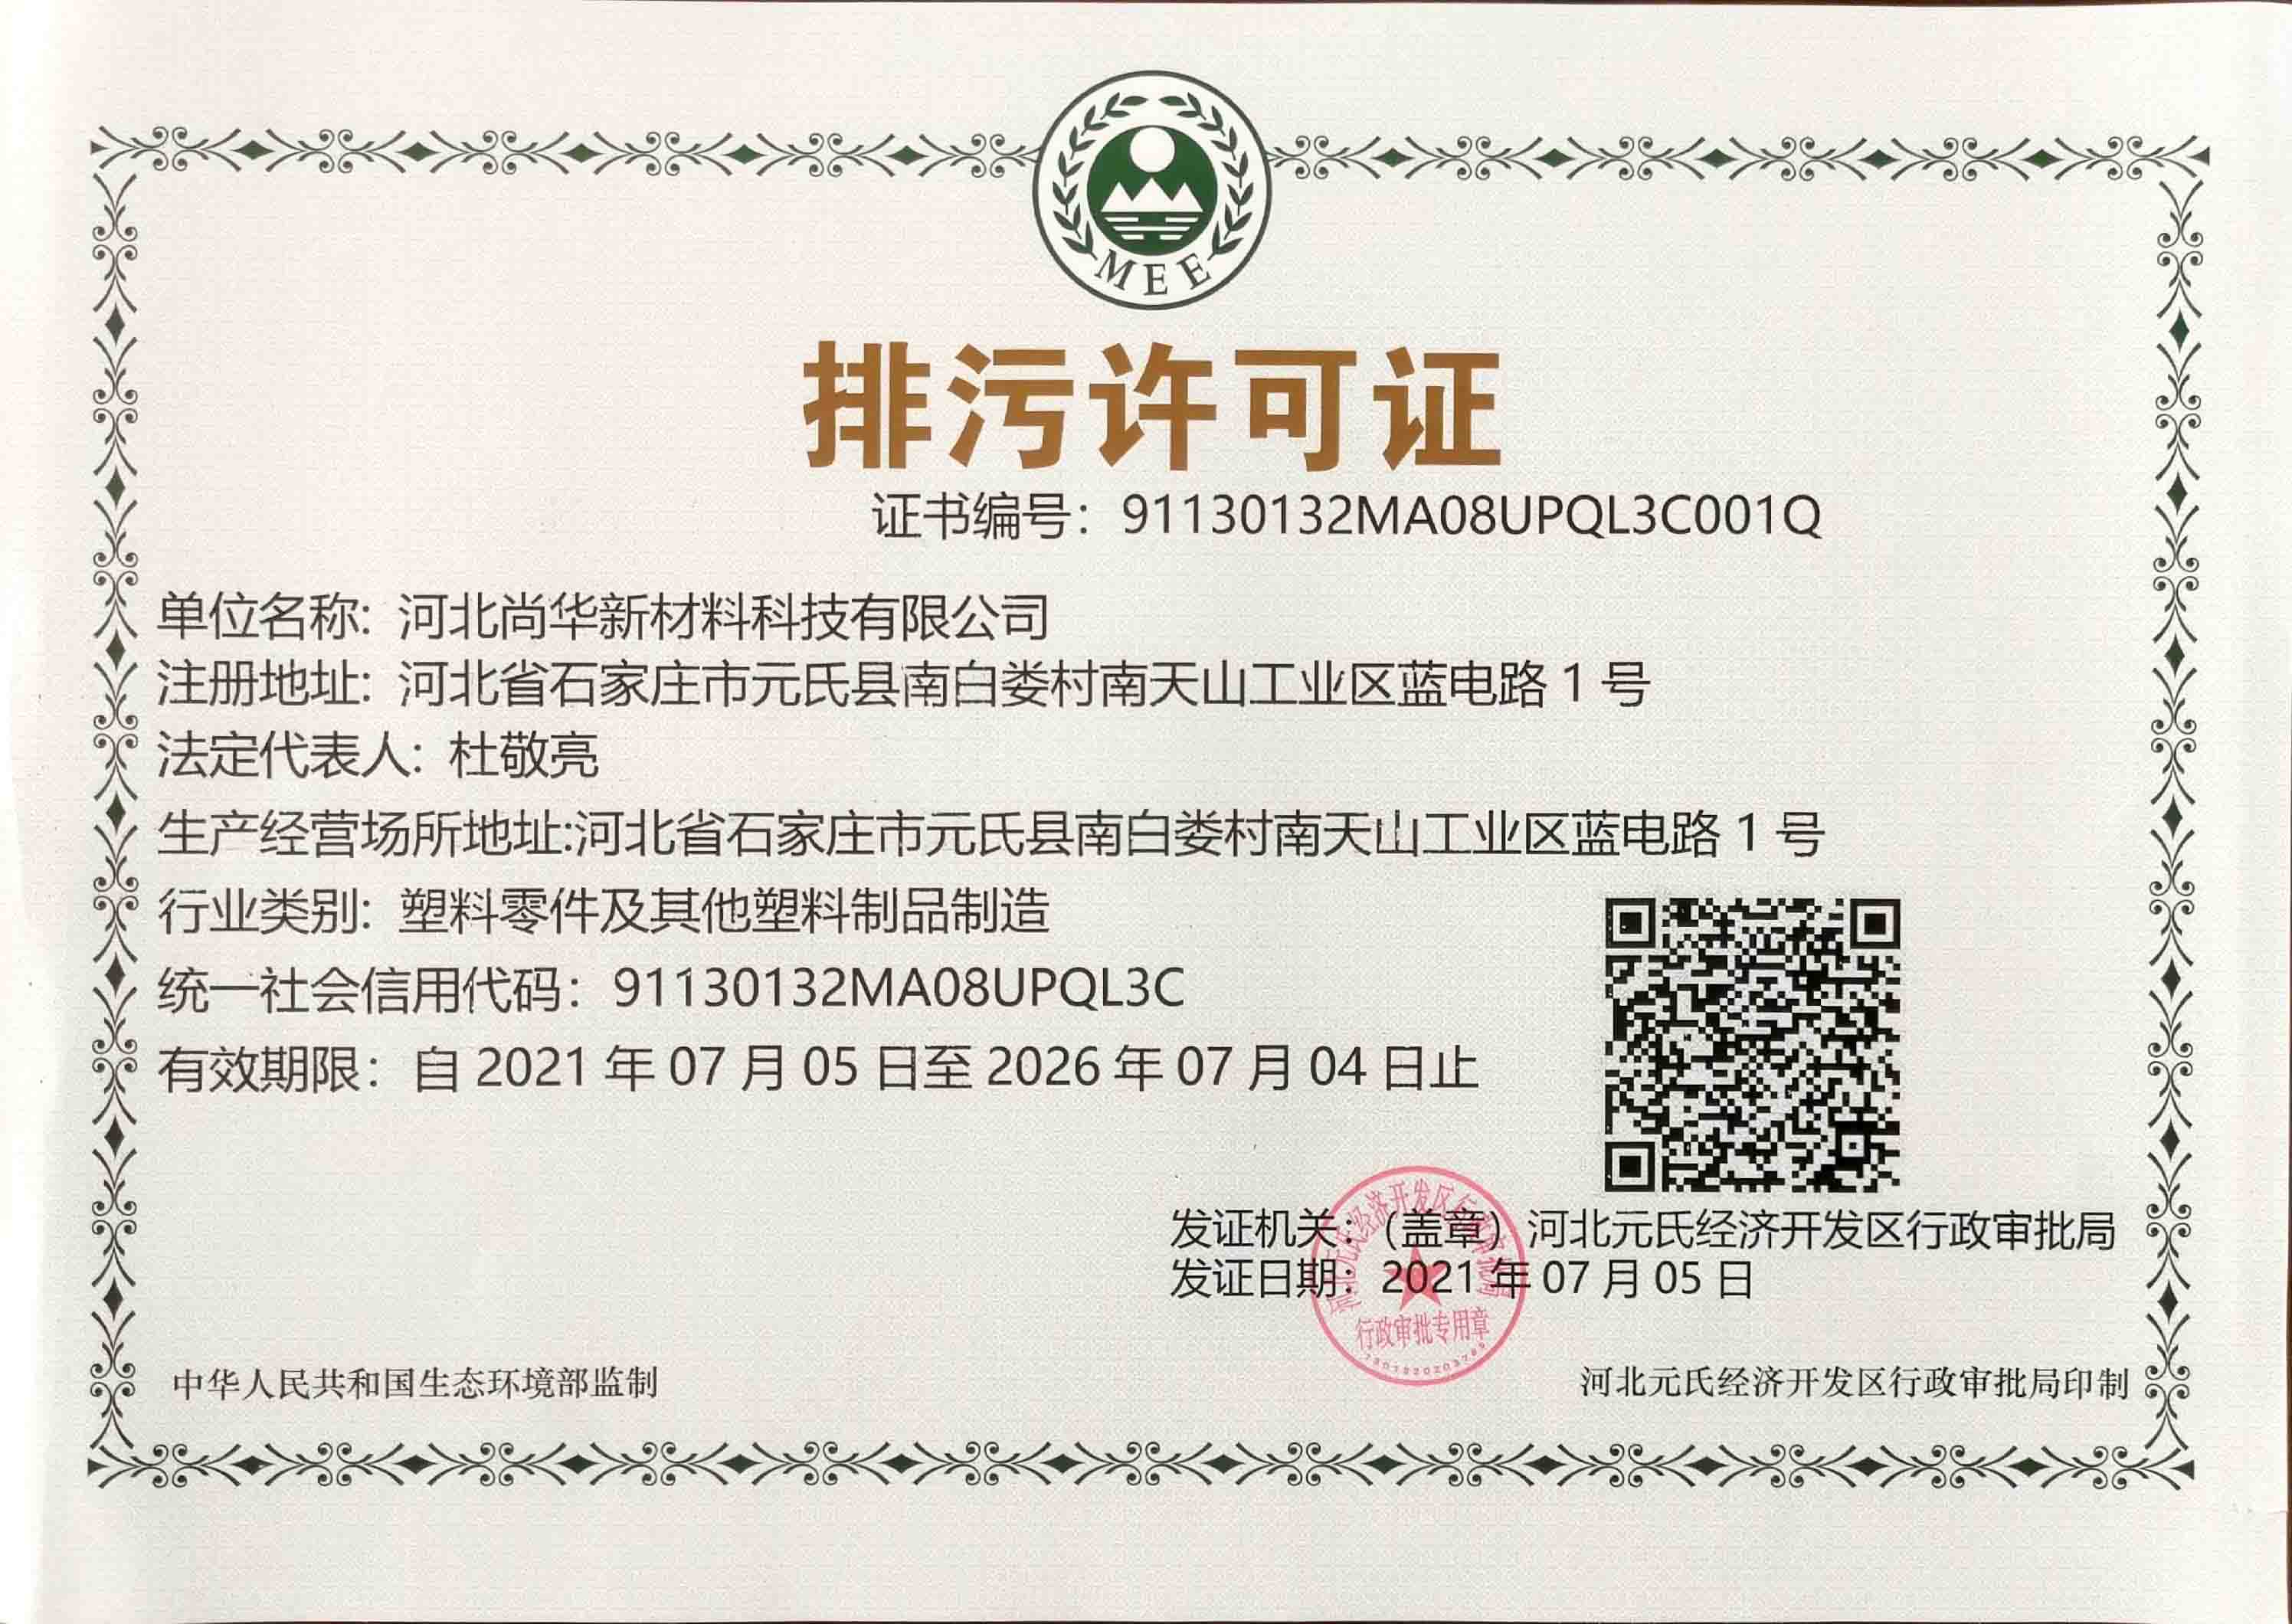 河北尚华新材料科技有限公司排污许可证2021